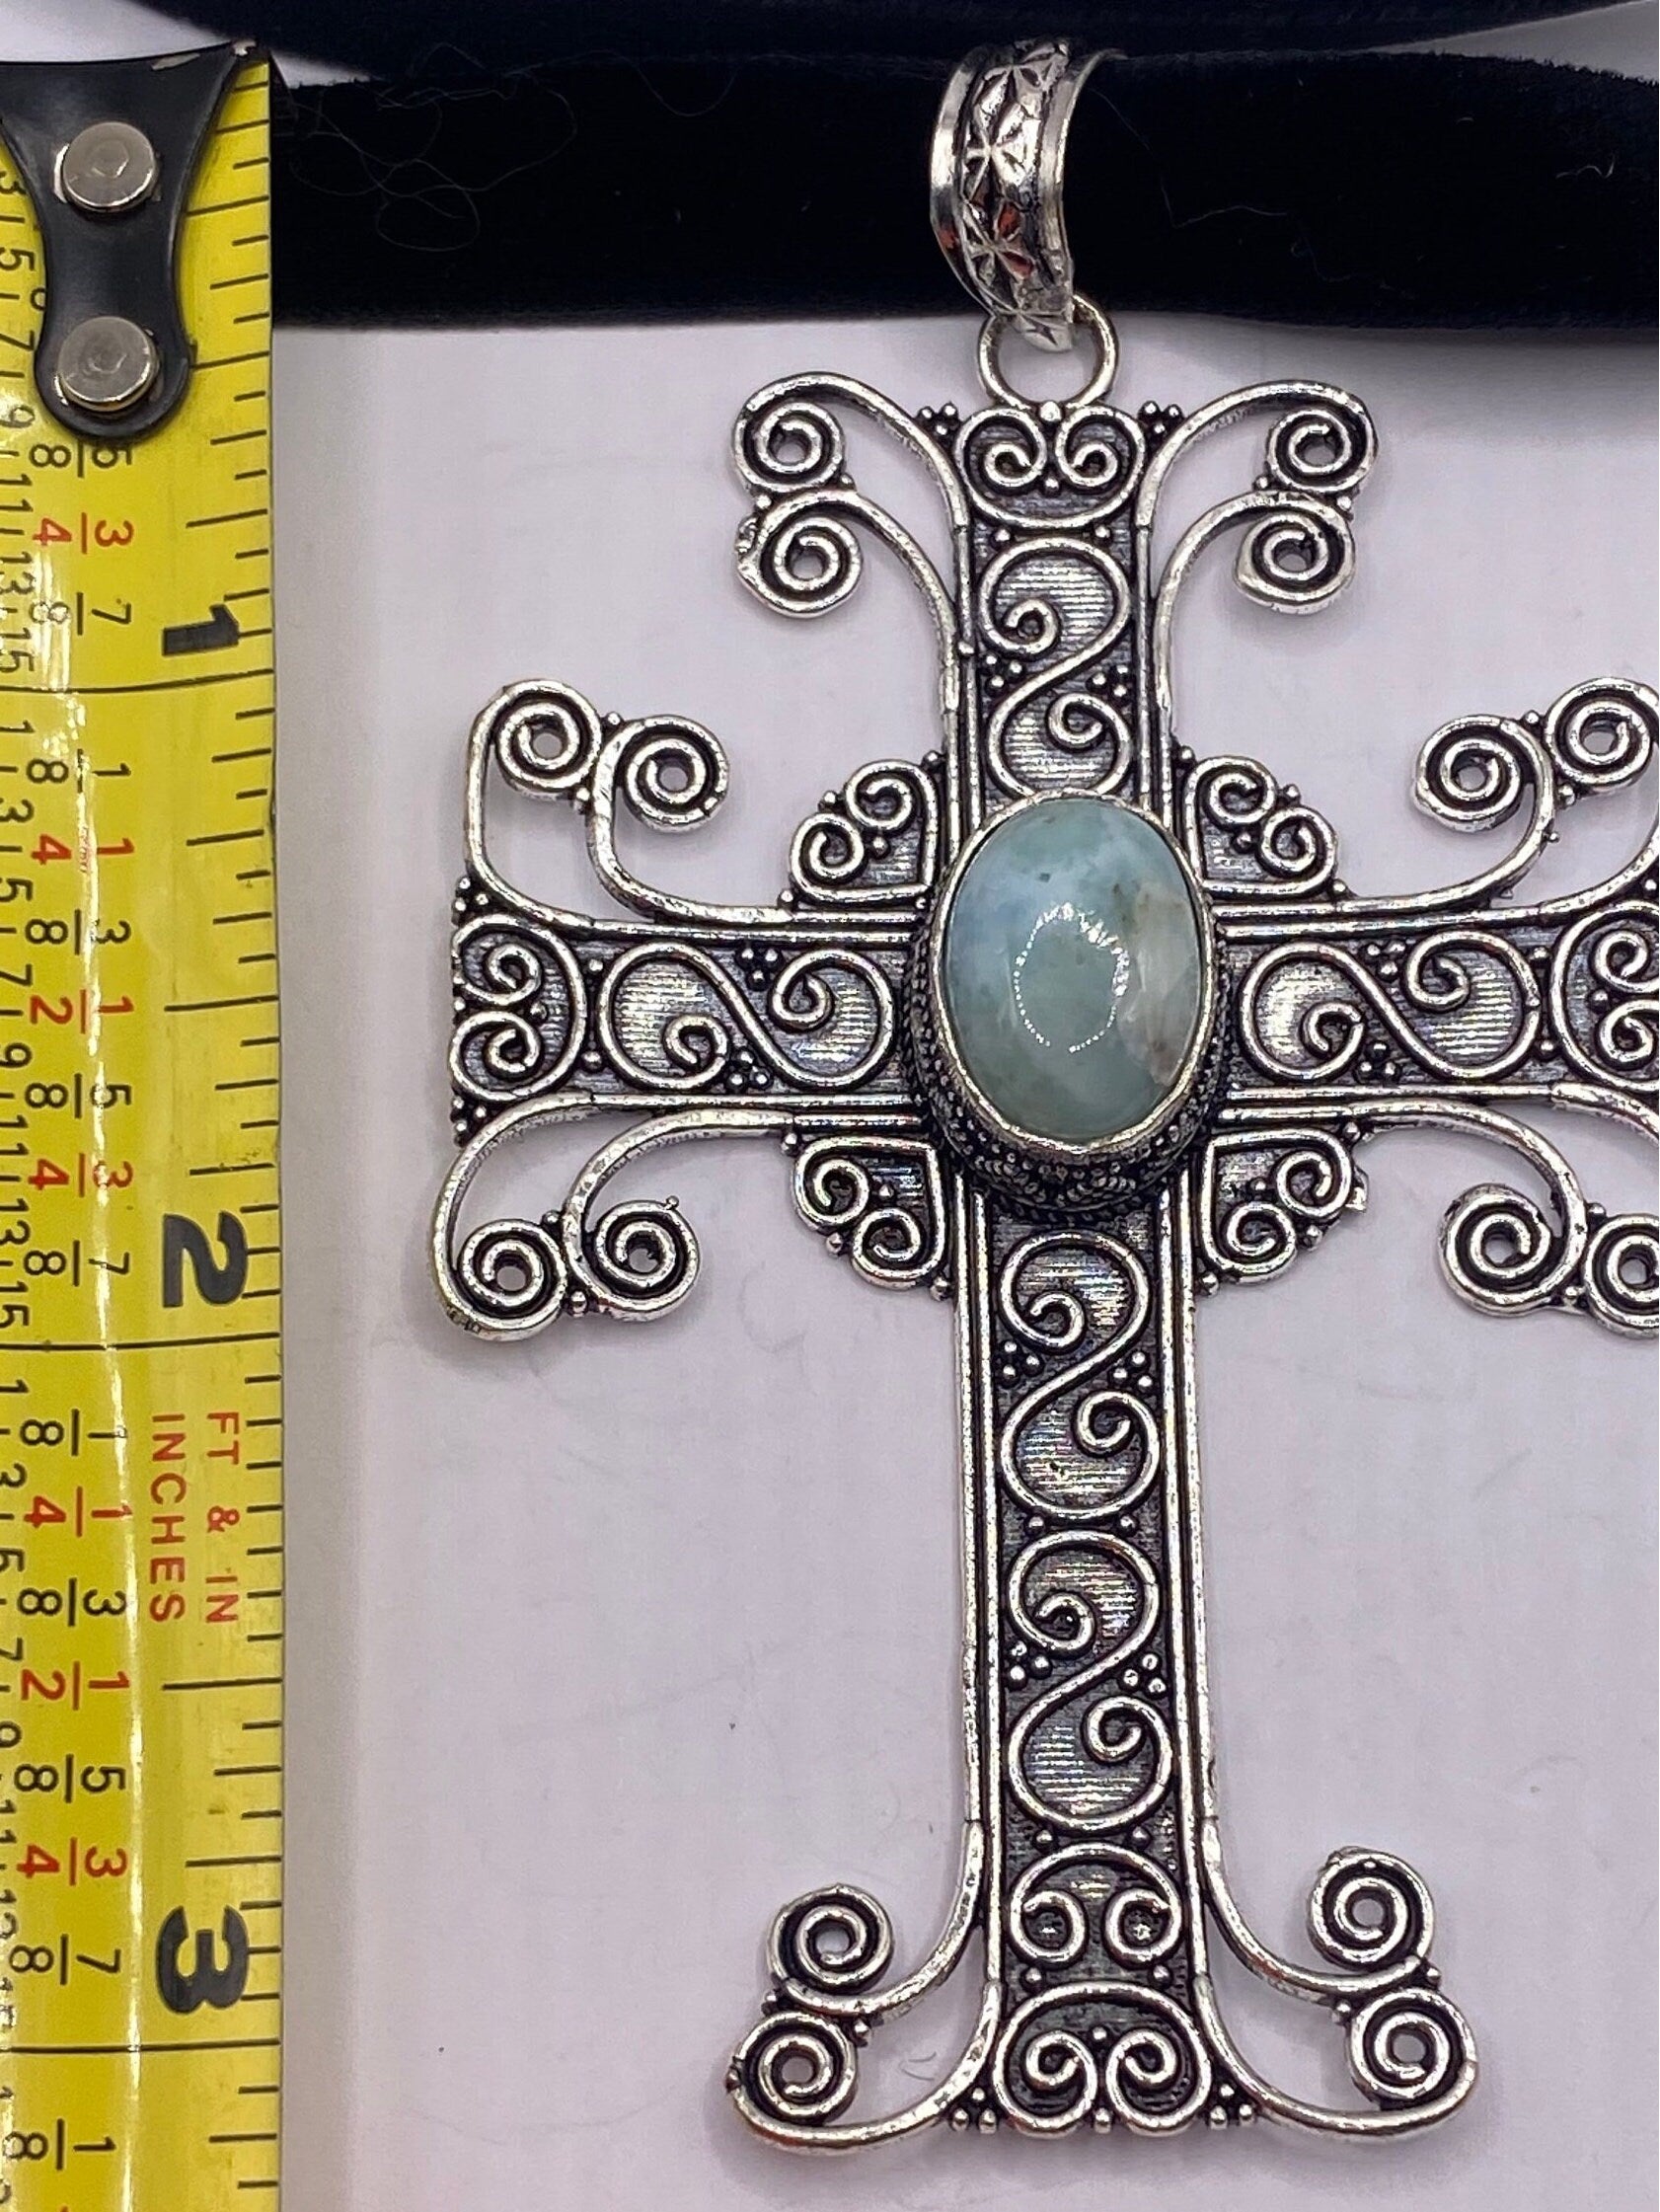 Vintage gothic blue larimar cross Pendant Necklace